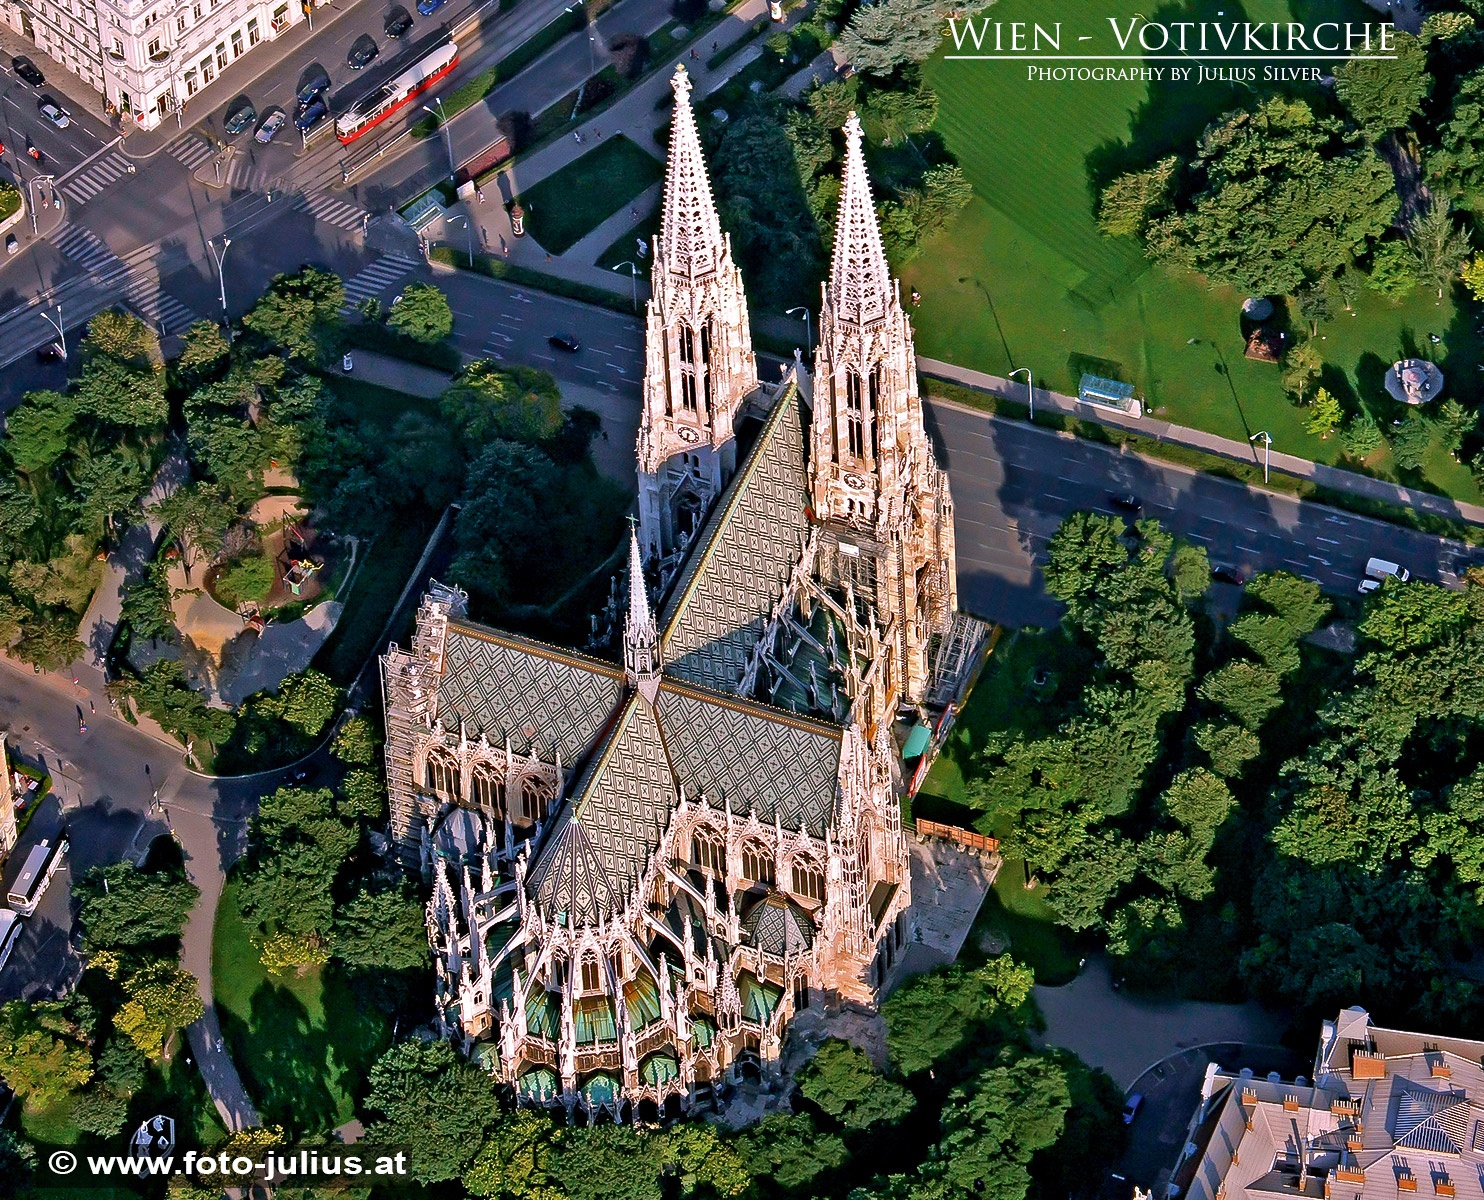 W4859a_Votivkirche_Wien.jpg, 979kB